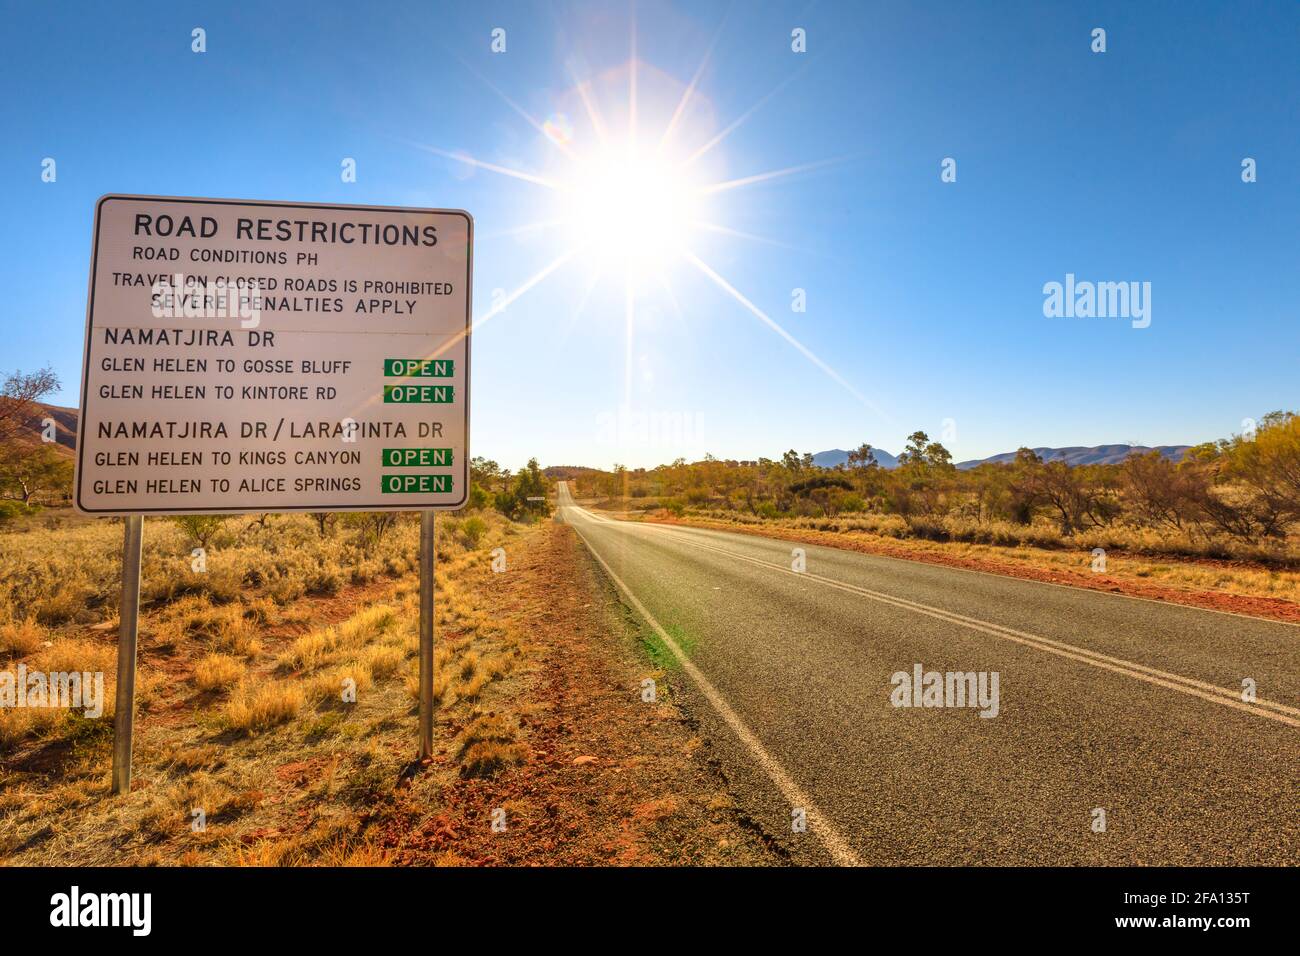 Northern Territory, Australien Outback. Straßenbeschränkung und Straßenzustand von Larapinta Drive und Namatjira Drive Schild Richtung Alice Springs Stockfoto